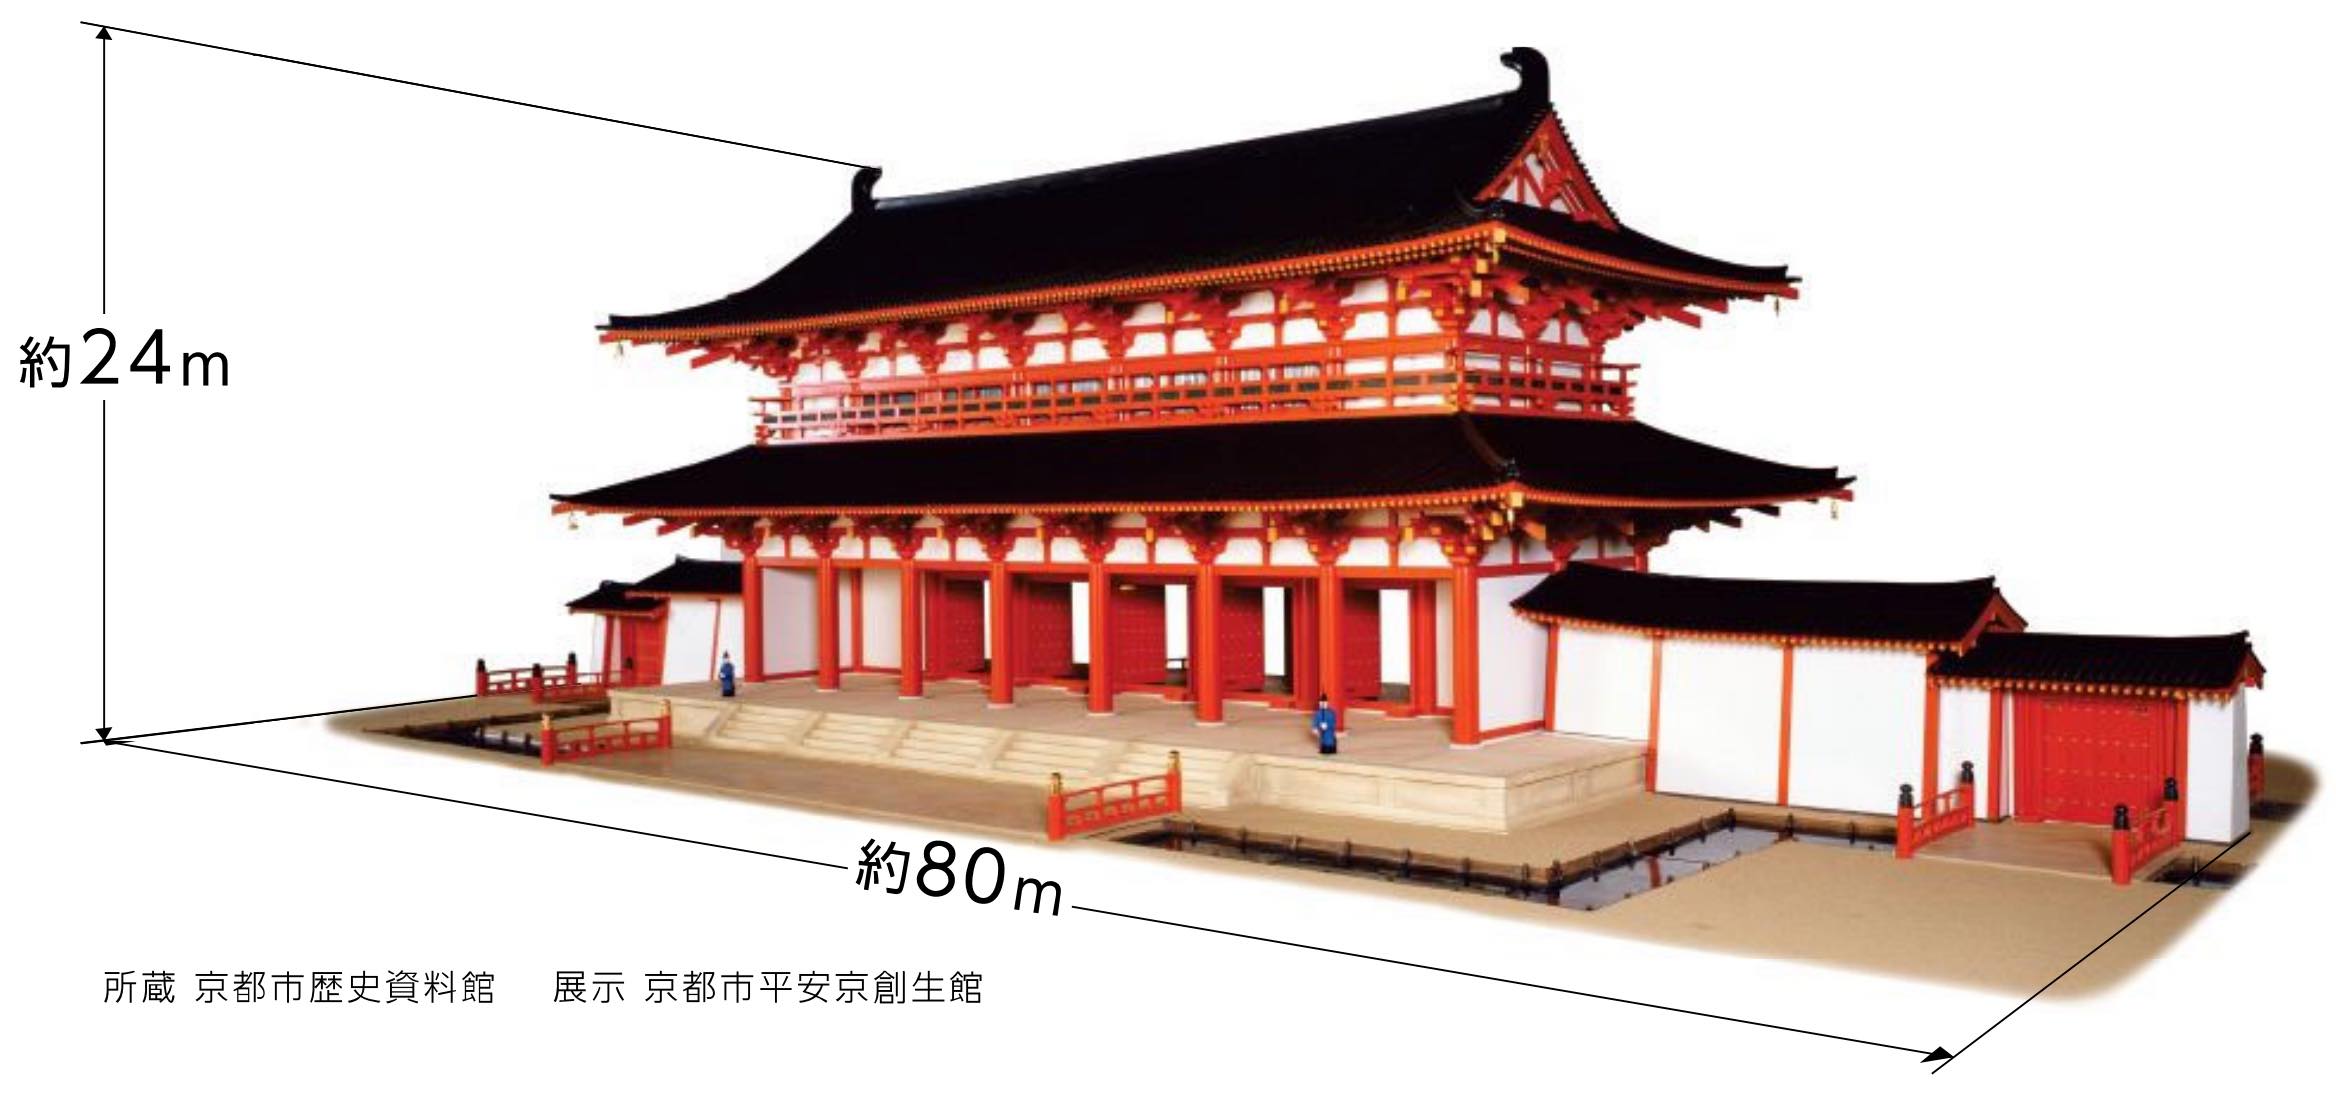 平安京の羅城門を原寸大で復元を目指す 京都の文化人ら構想 協力呼びかけ木造建設を念頭に Re Urbanization 再都市化